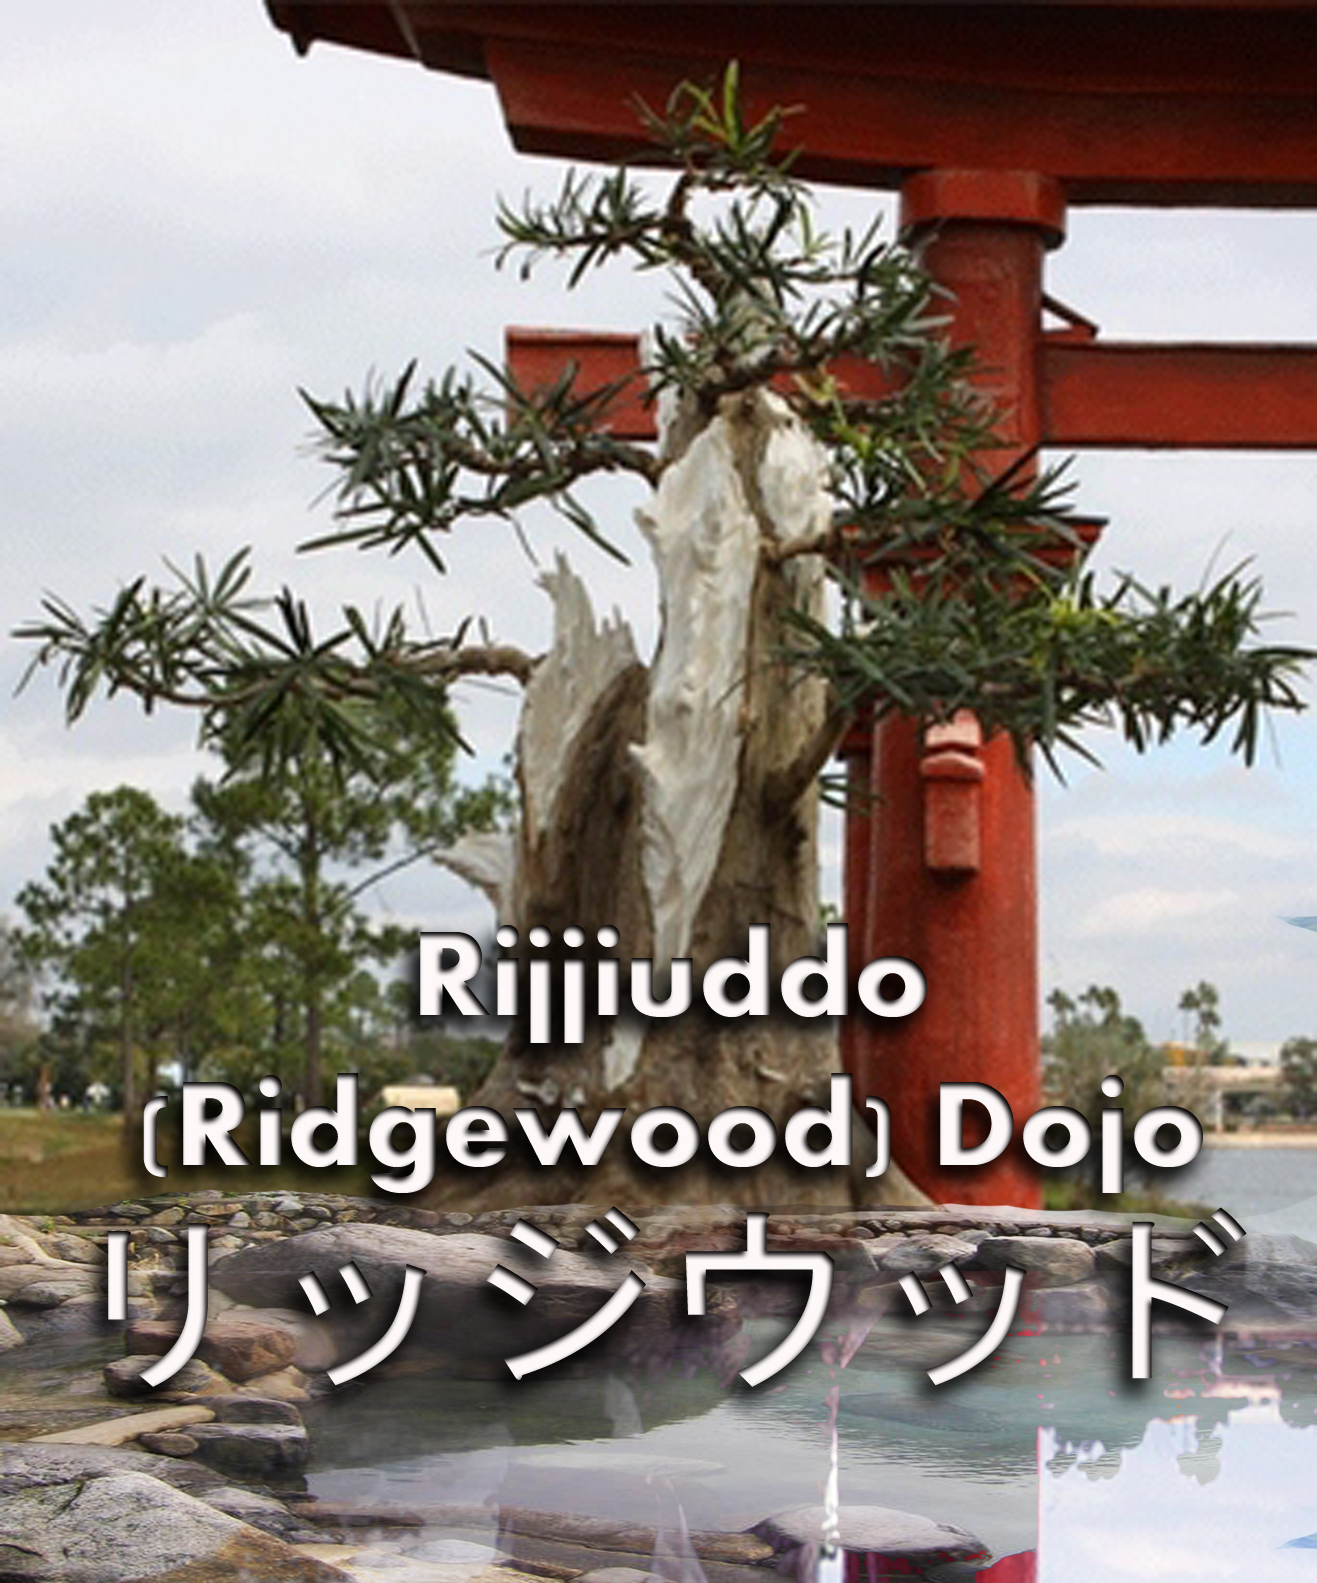 Rijjiuddo (Ridgewood) Dojo - Kaze Arashi Ryu